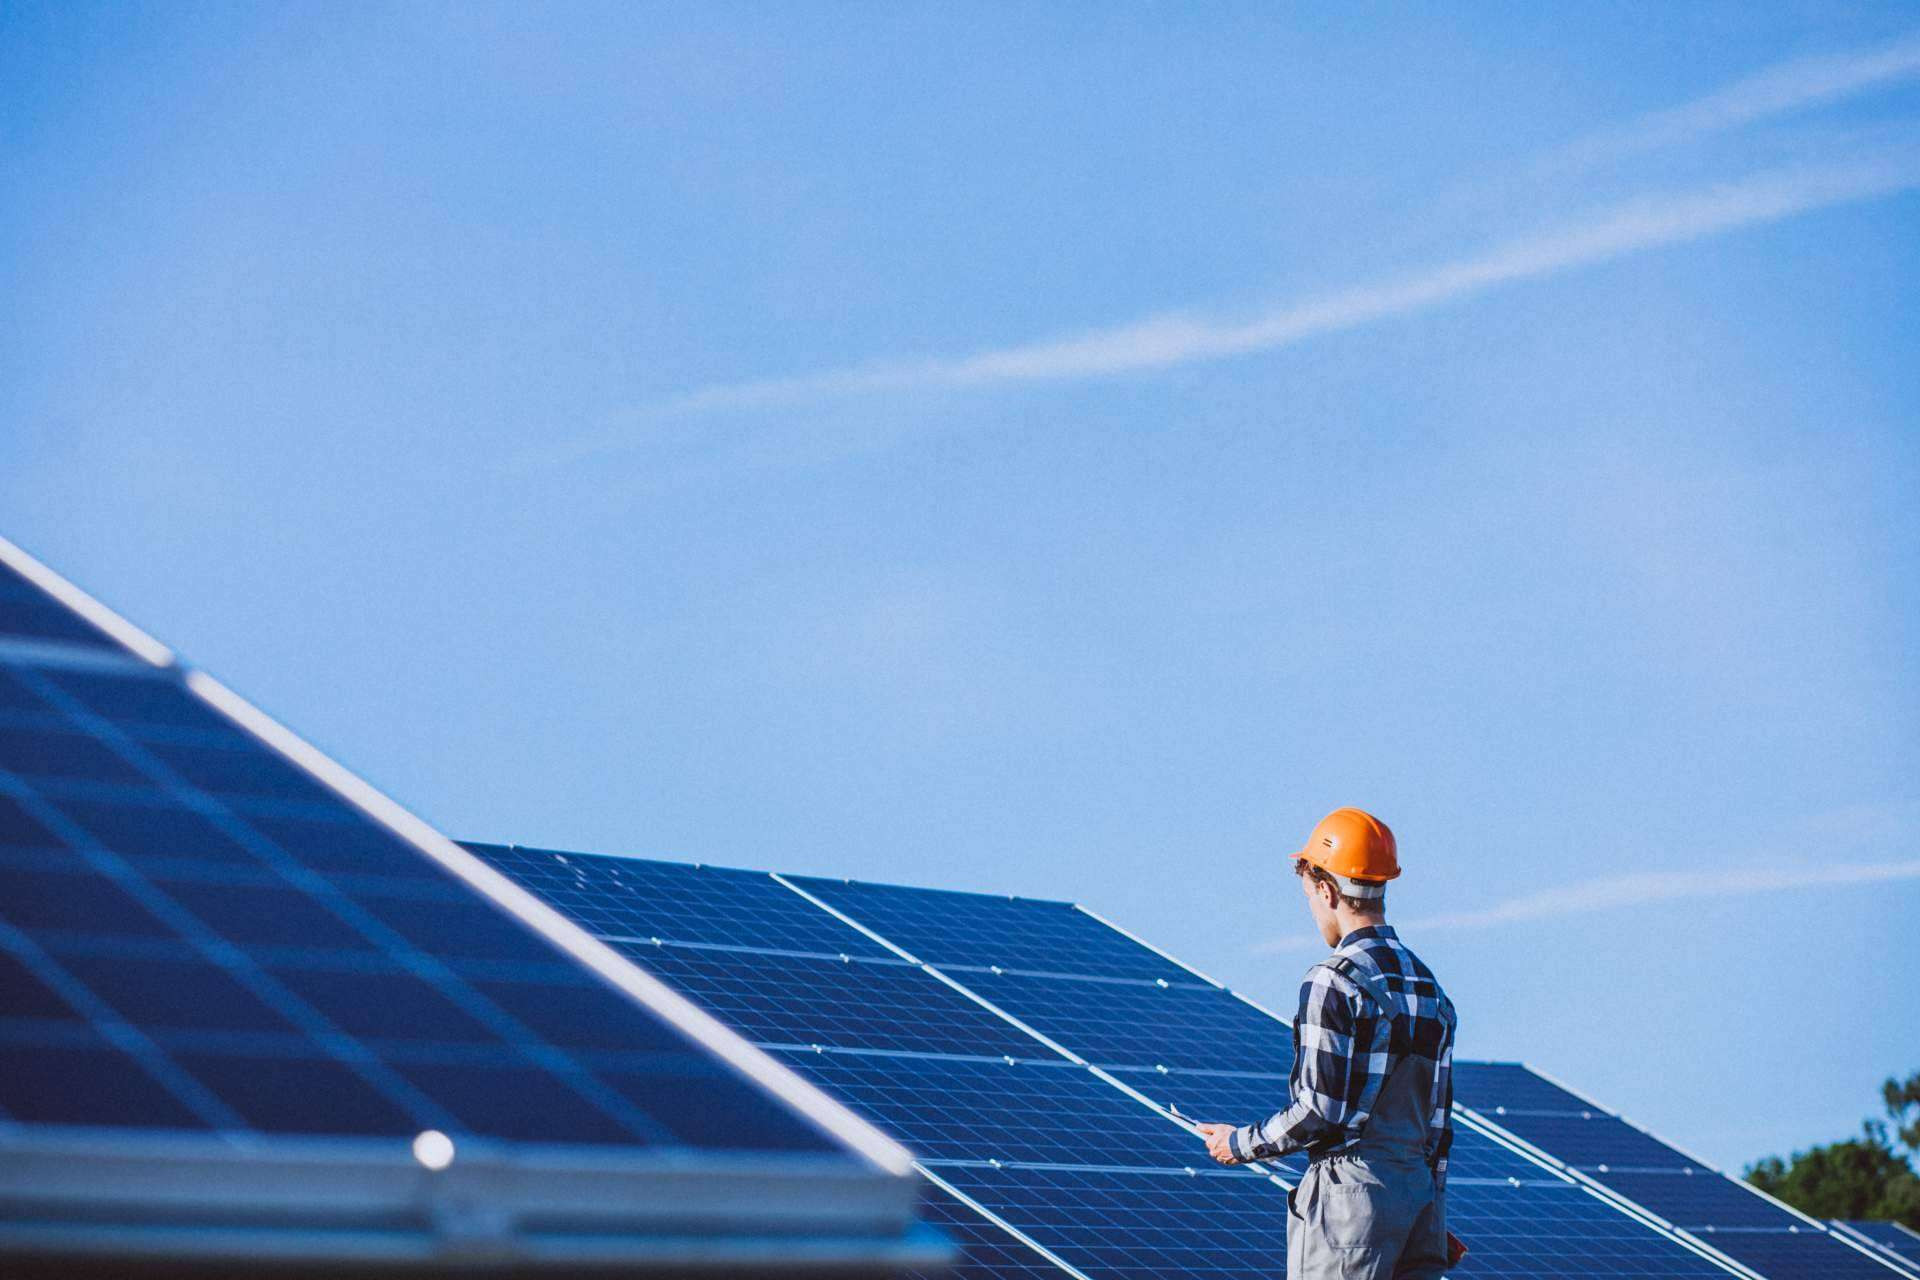  Solarea Tech, el mayor instalador de placas solares en Alicante 